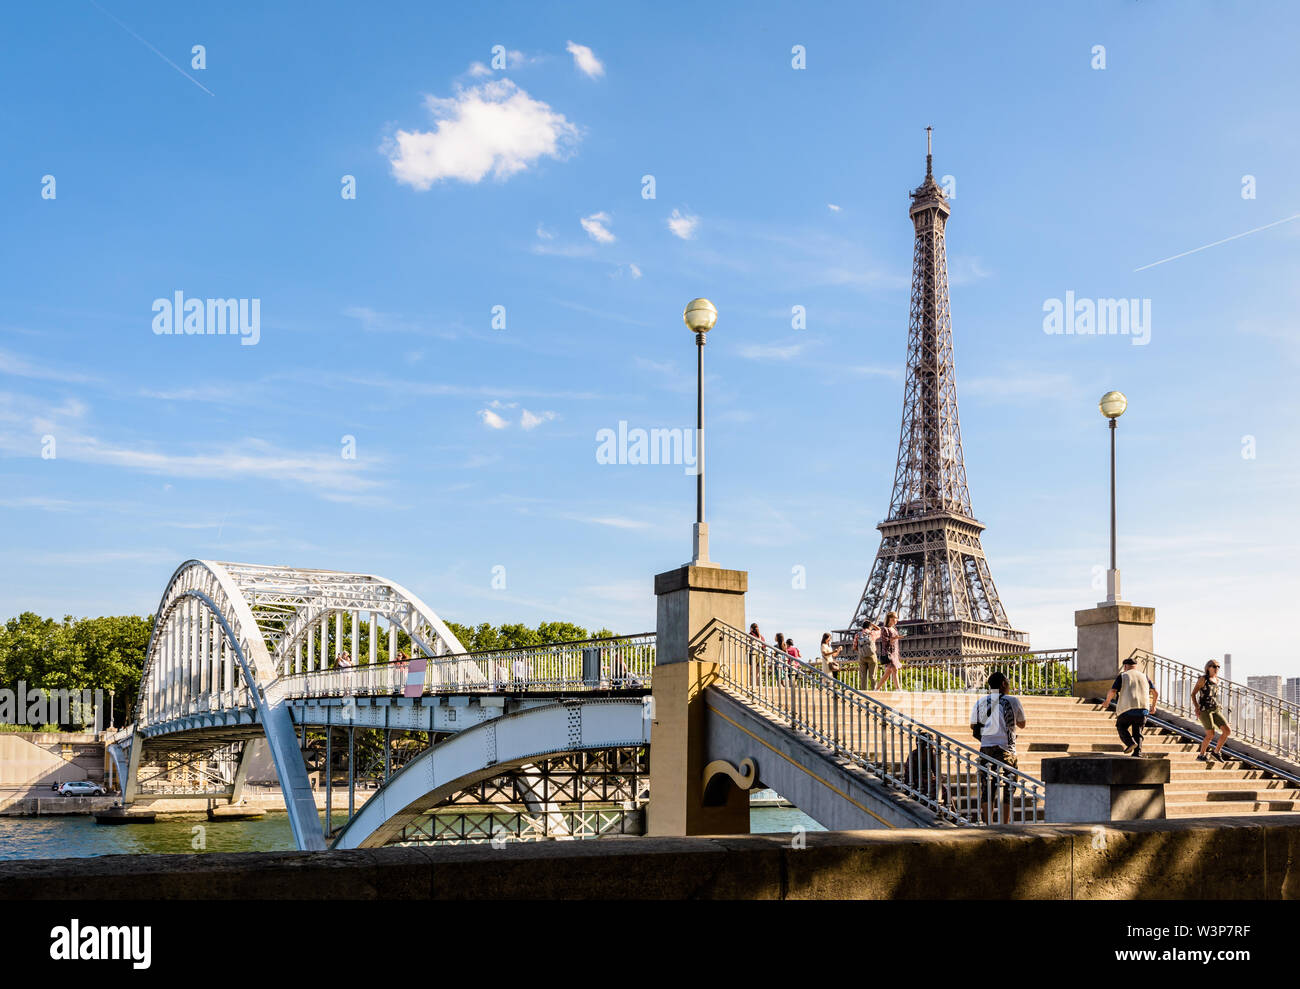 Die Debilly Fußgängerbrücke ist ein Fußgänger durch Bogen Brücke über den Fluss Seine, im Jahr 1900 nicht weit von der Eiffelturm in Paris, Frankreich. Stockfoto